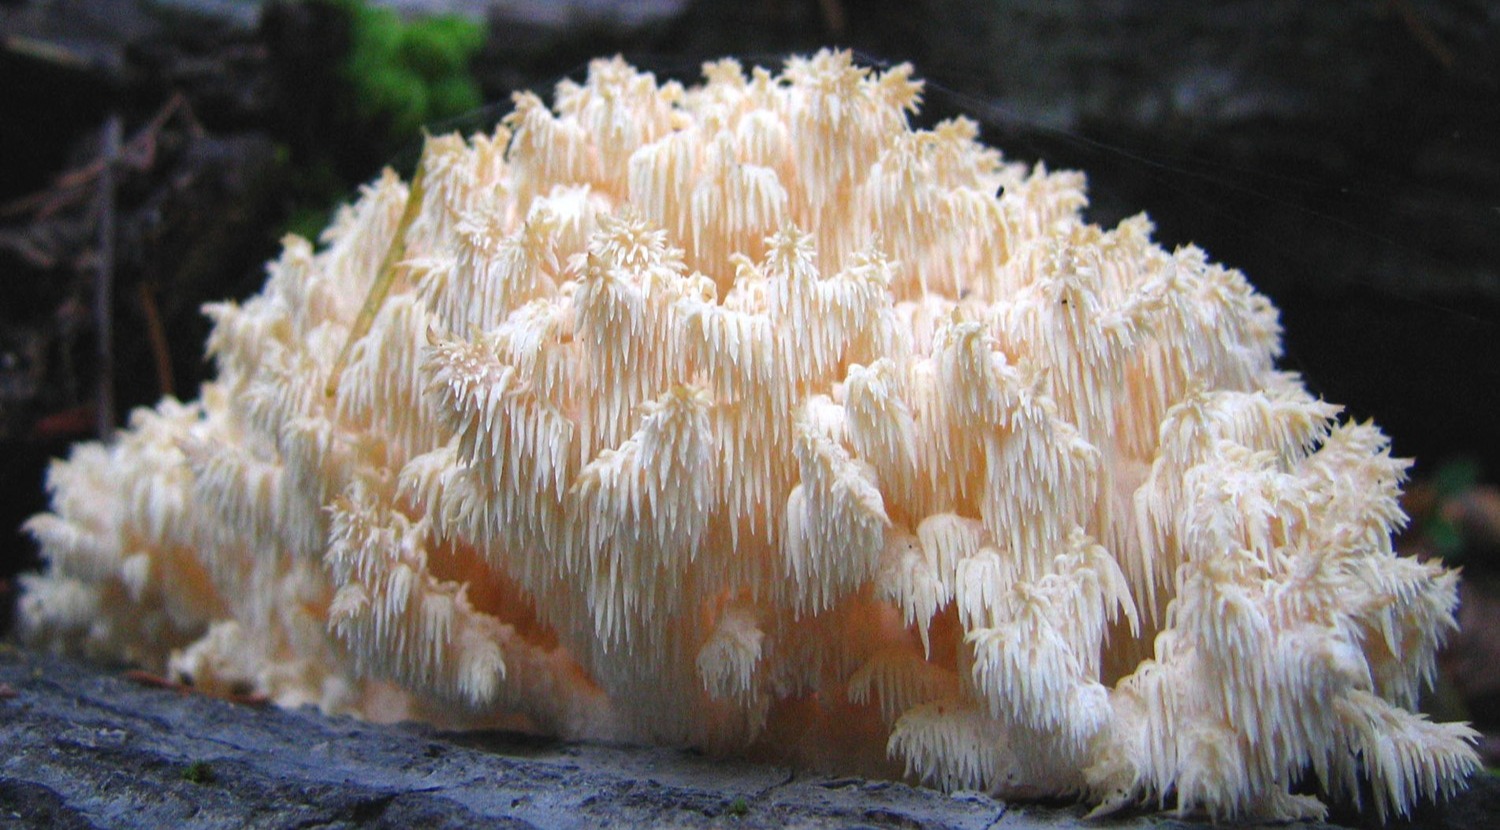 comb tooth mushroom